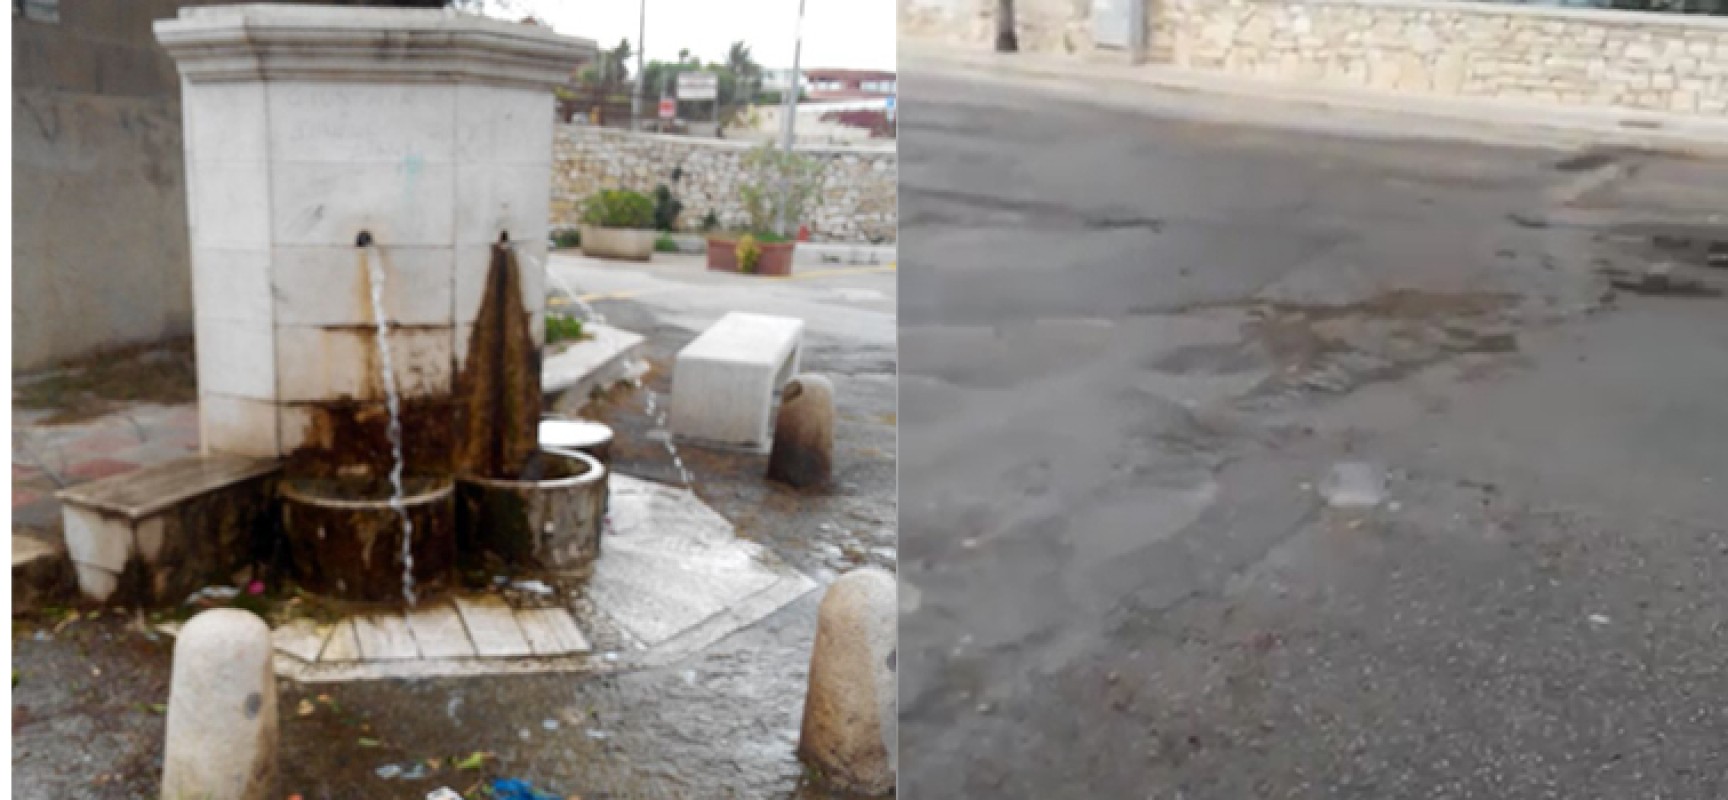 Rubinetti rubati alla fontana di Salsello e conseguente spreco di acqua pubblica